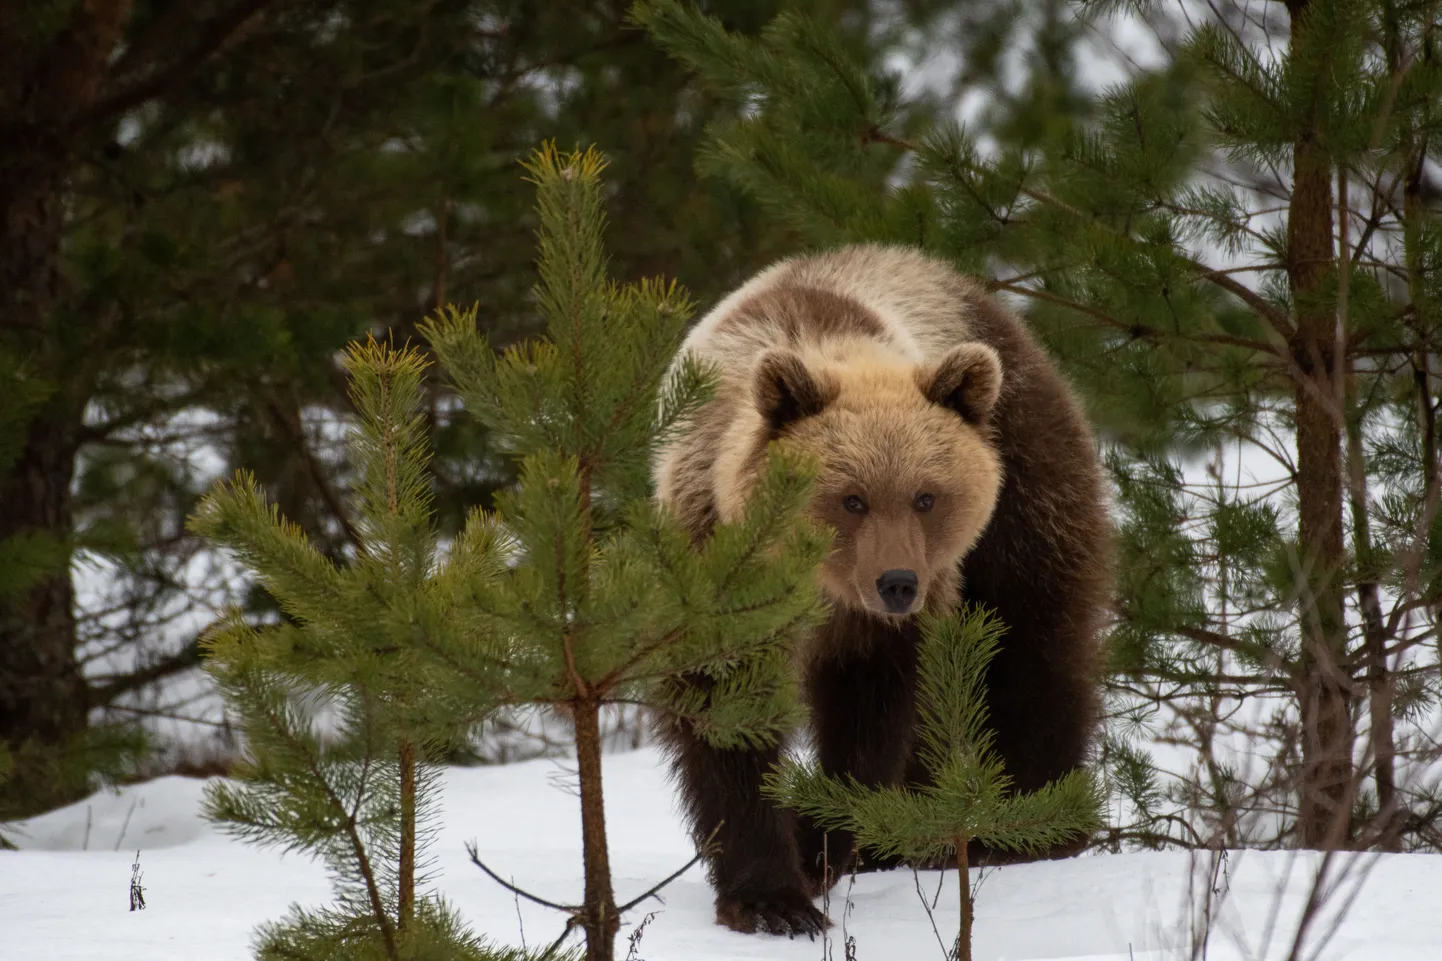 Чтобы увидеть медведя, не всегда нужно идти в лес - все чаще они бродят чуть ли не в населенных пунктах. На снимке запечатлен "свой медведь" куремяэсцев - уже две весны подряд он наведывается в деревню.